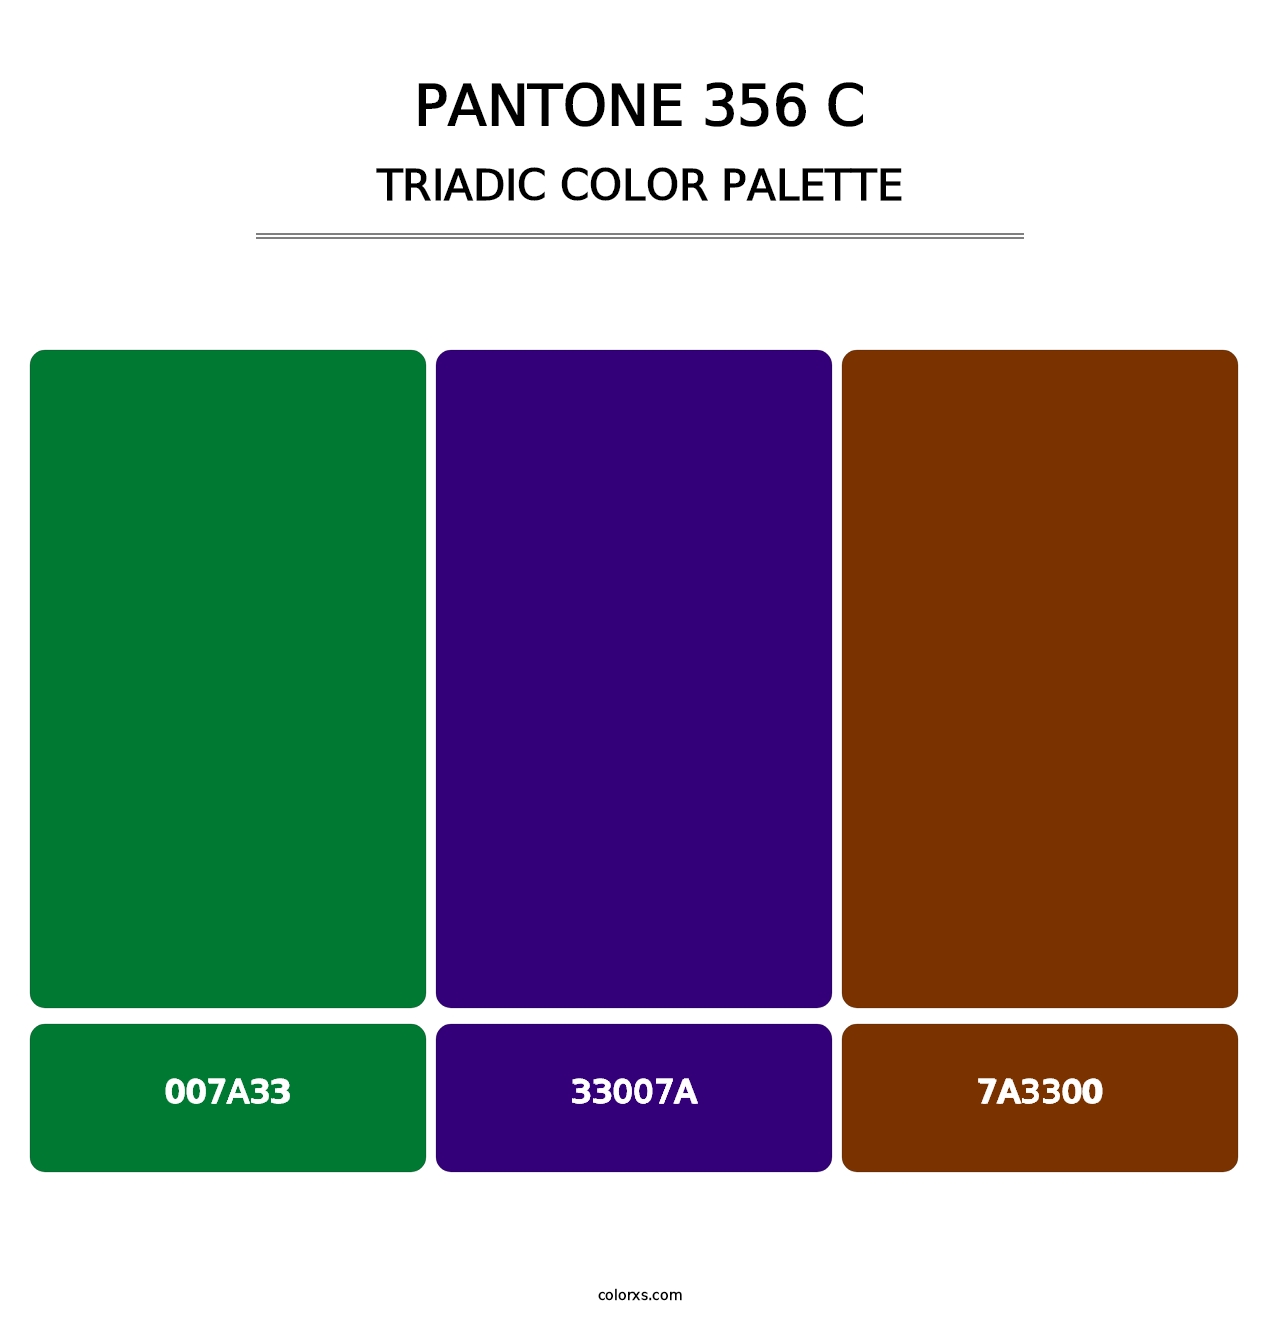 PANTONE 356 C - Triadic Color Palette